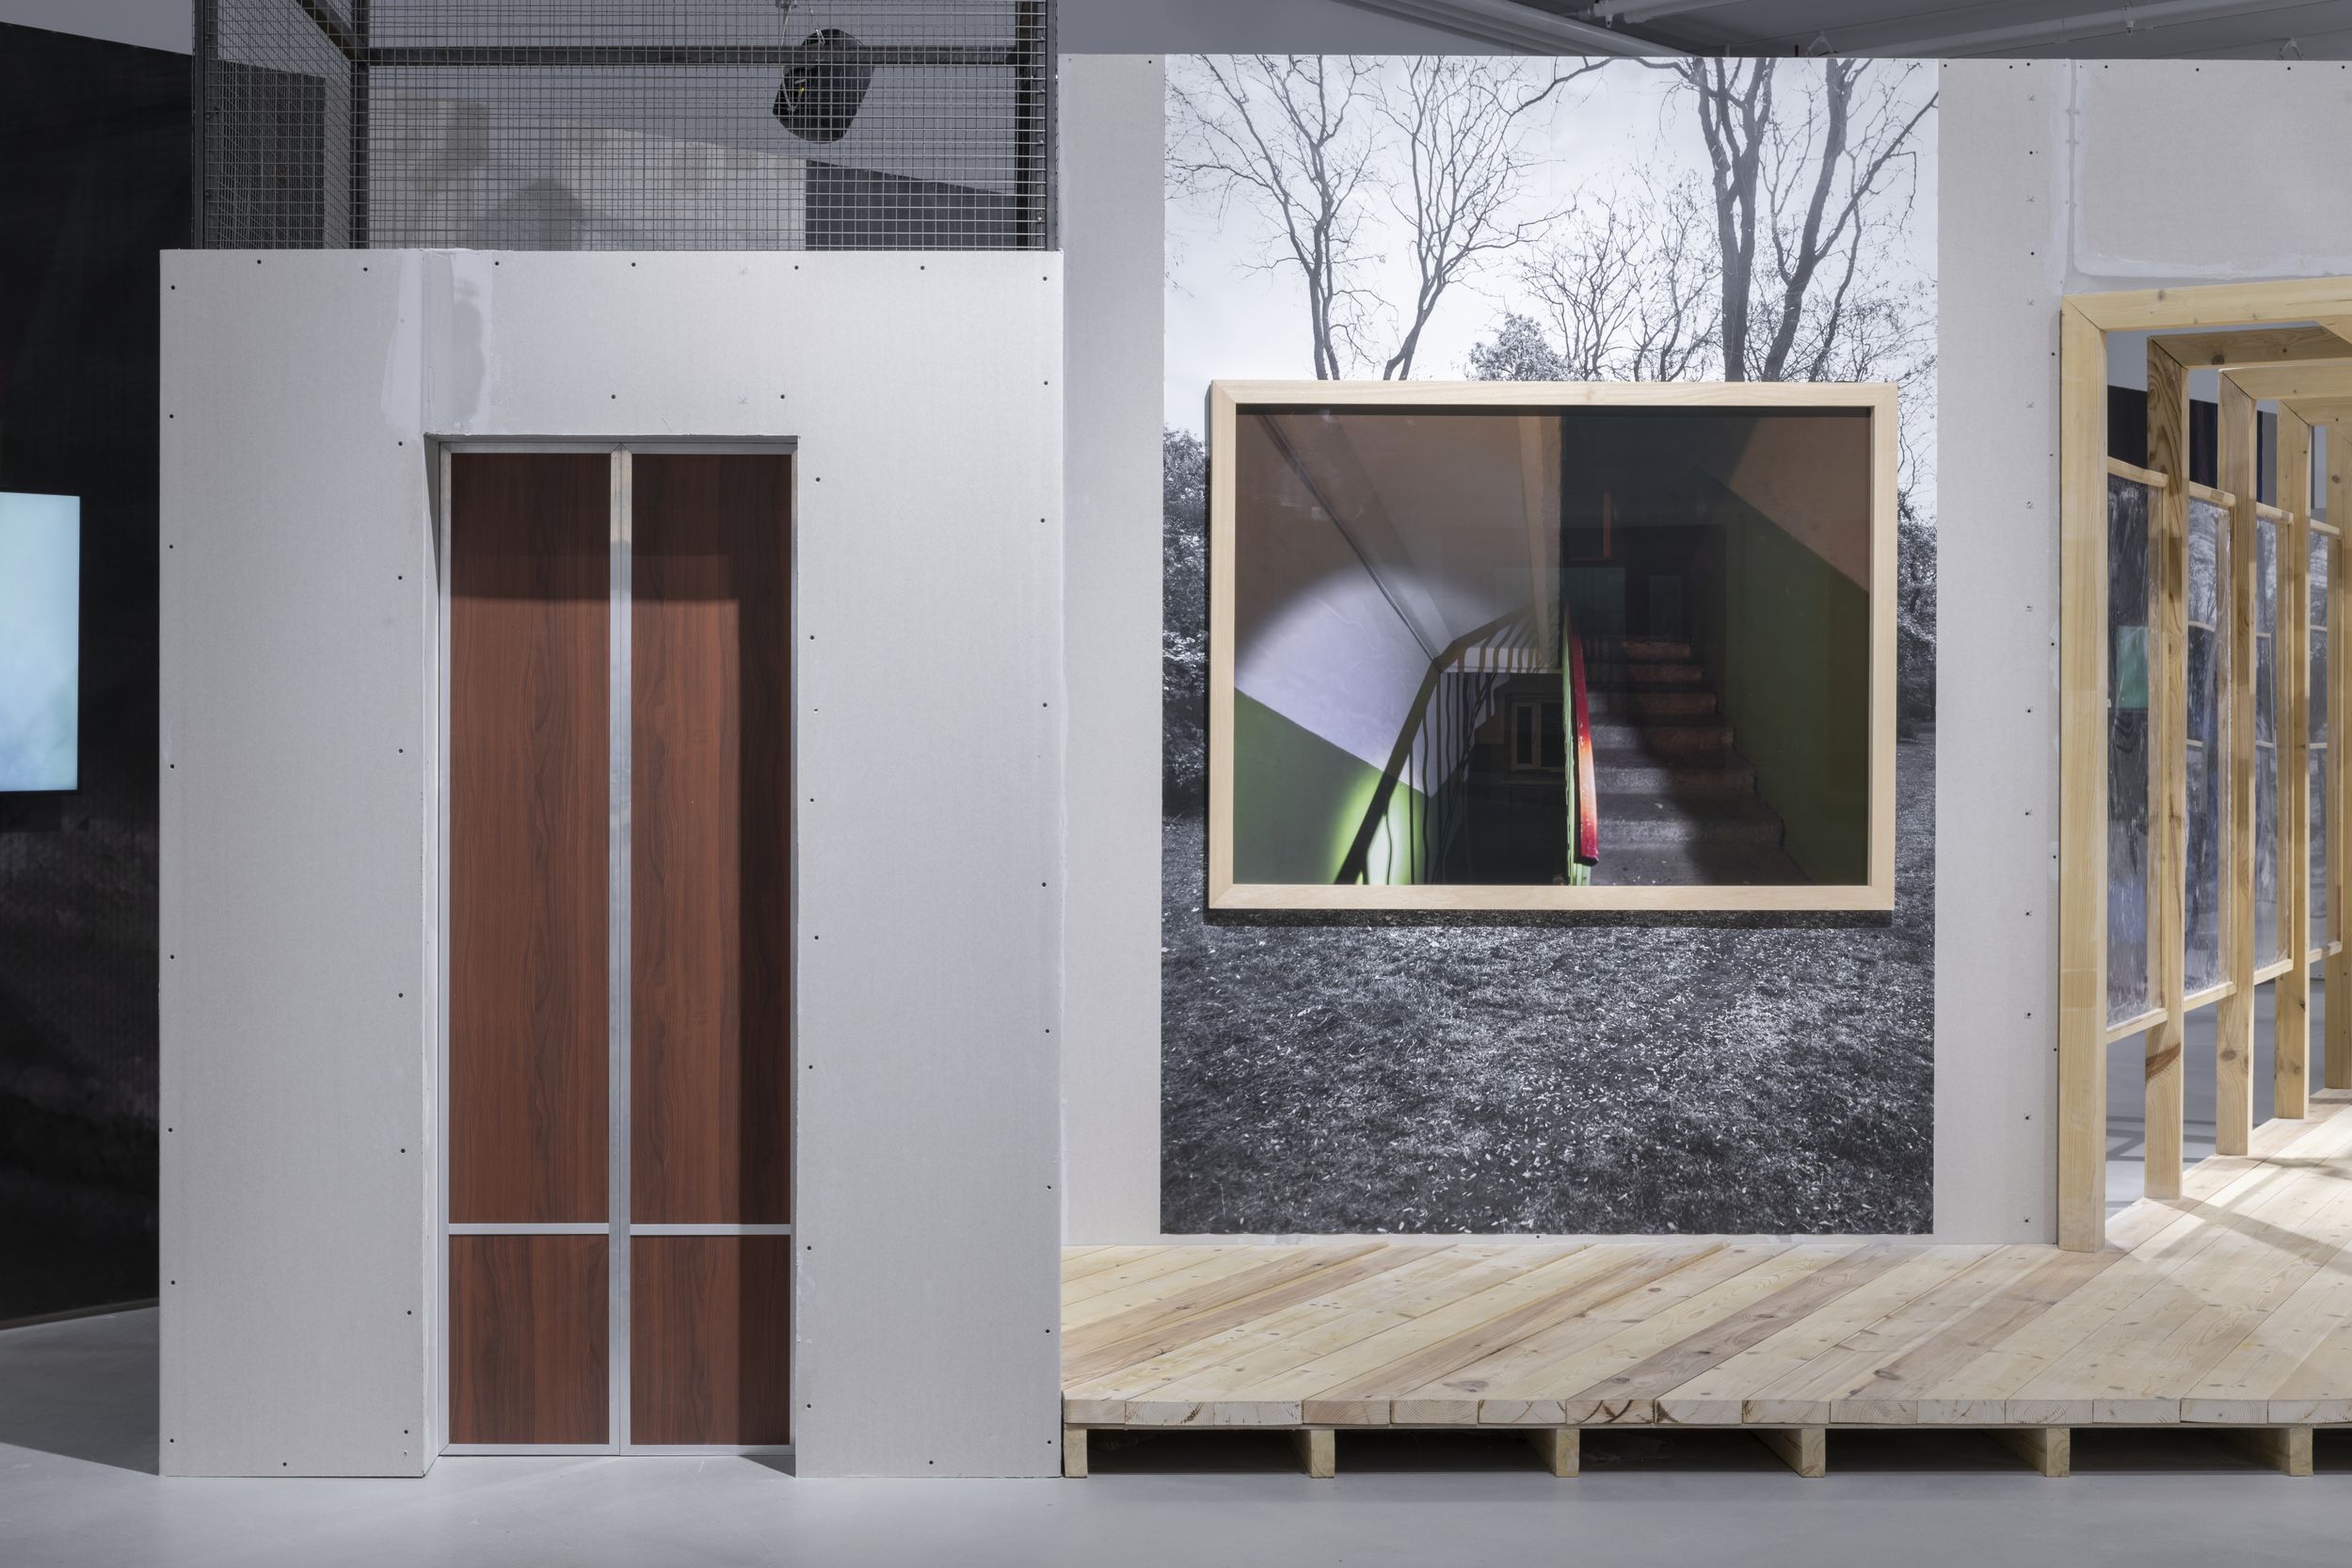 Фотография фрагмента выставки «Дом и сад», декорации: дверь лифта,  оконная рама с фотографией лестничной клетки и деревянный коридор